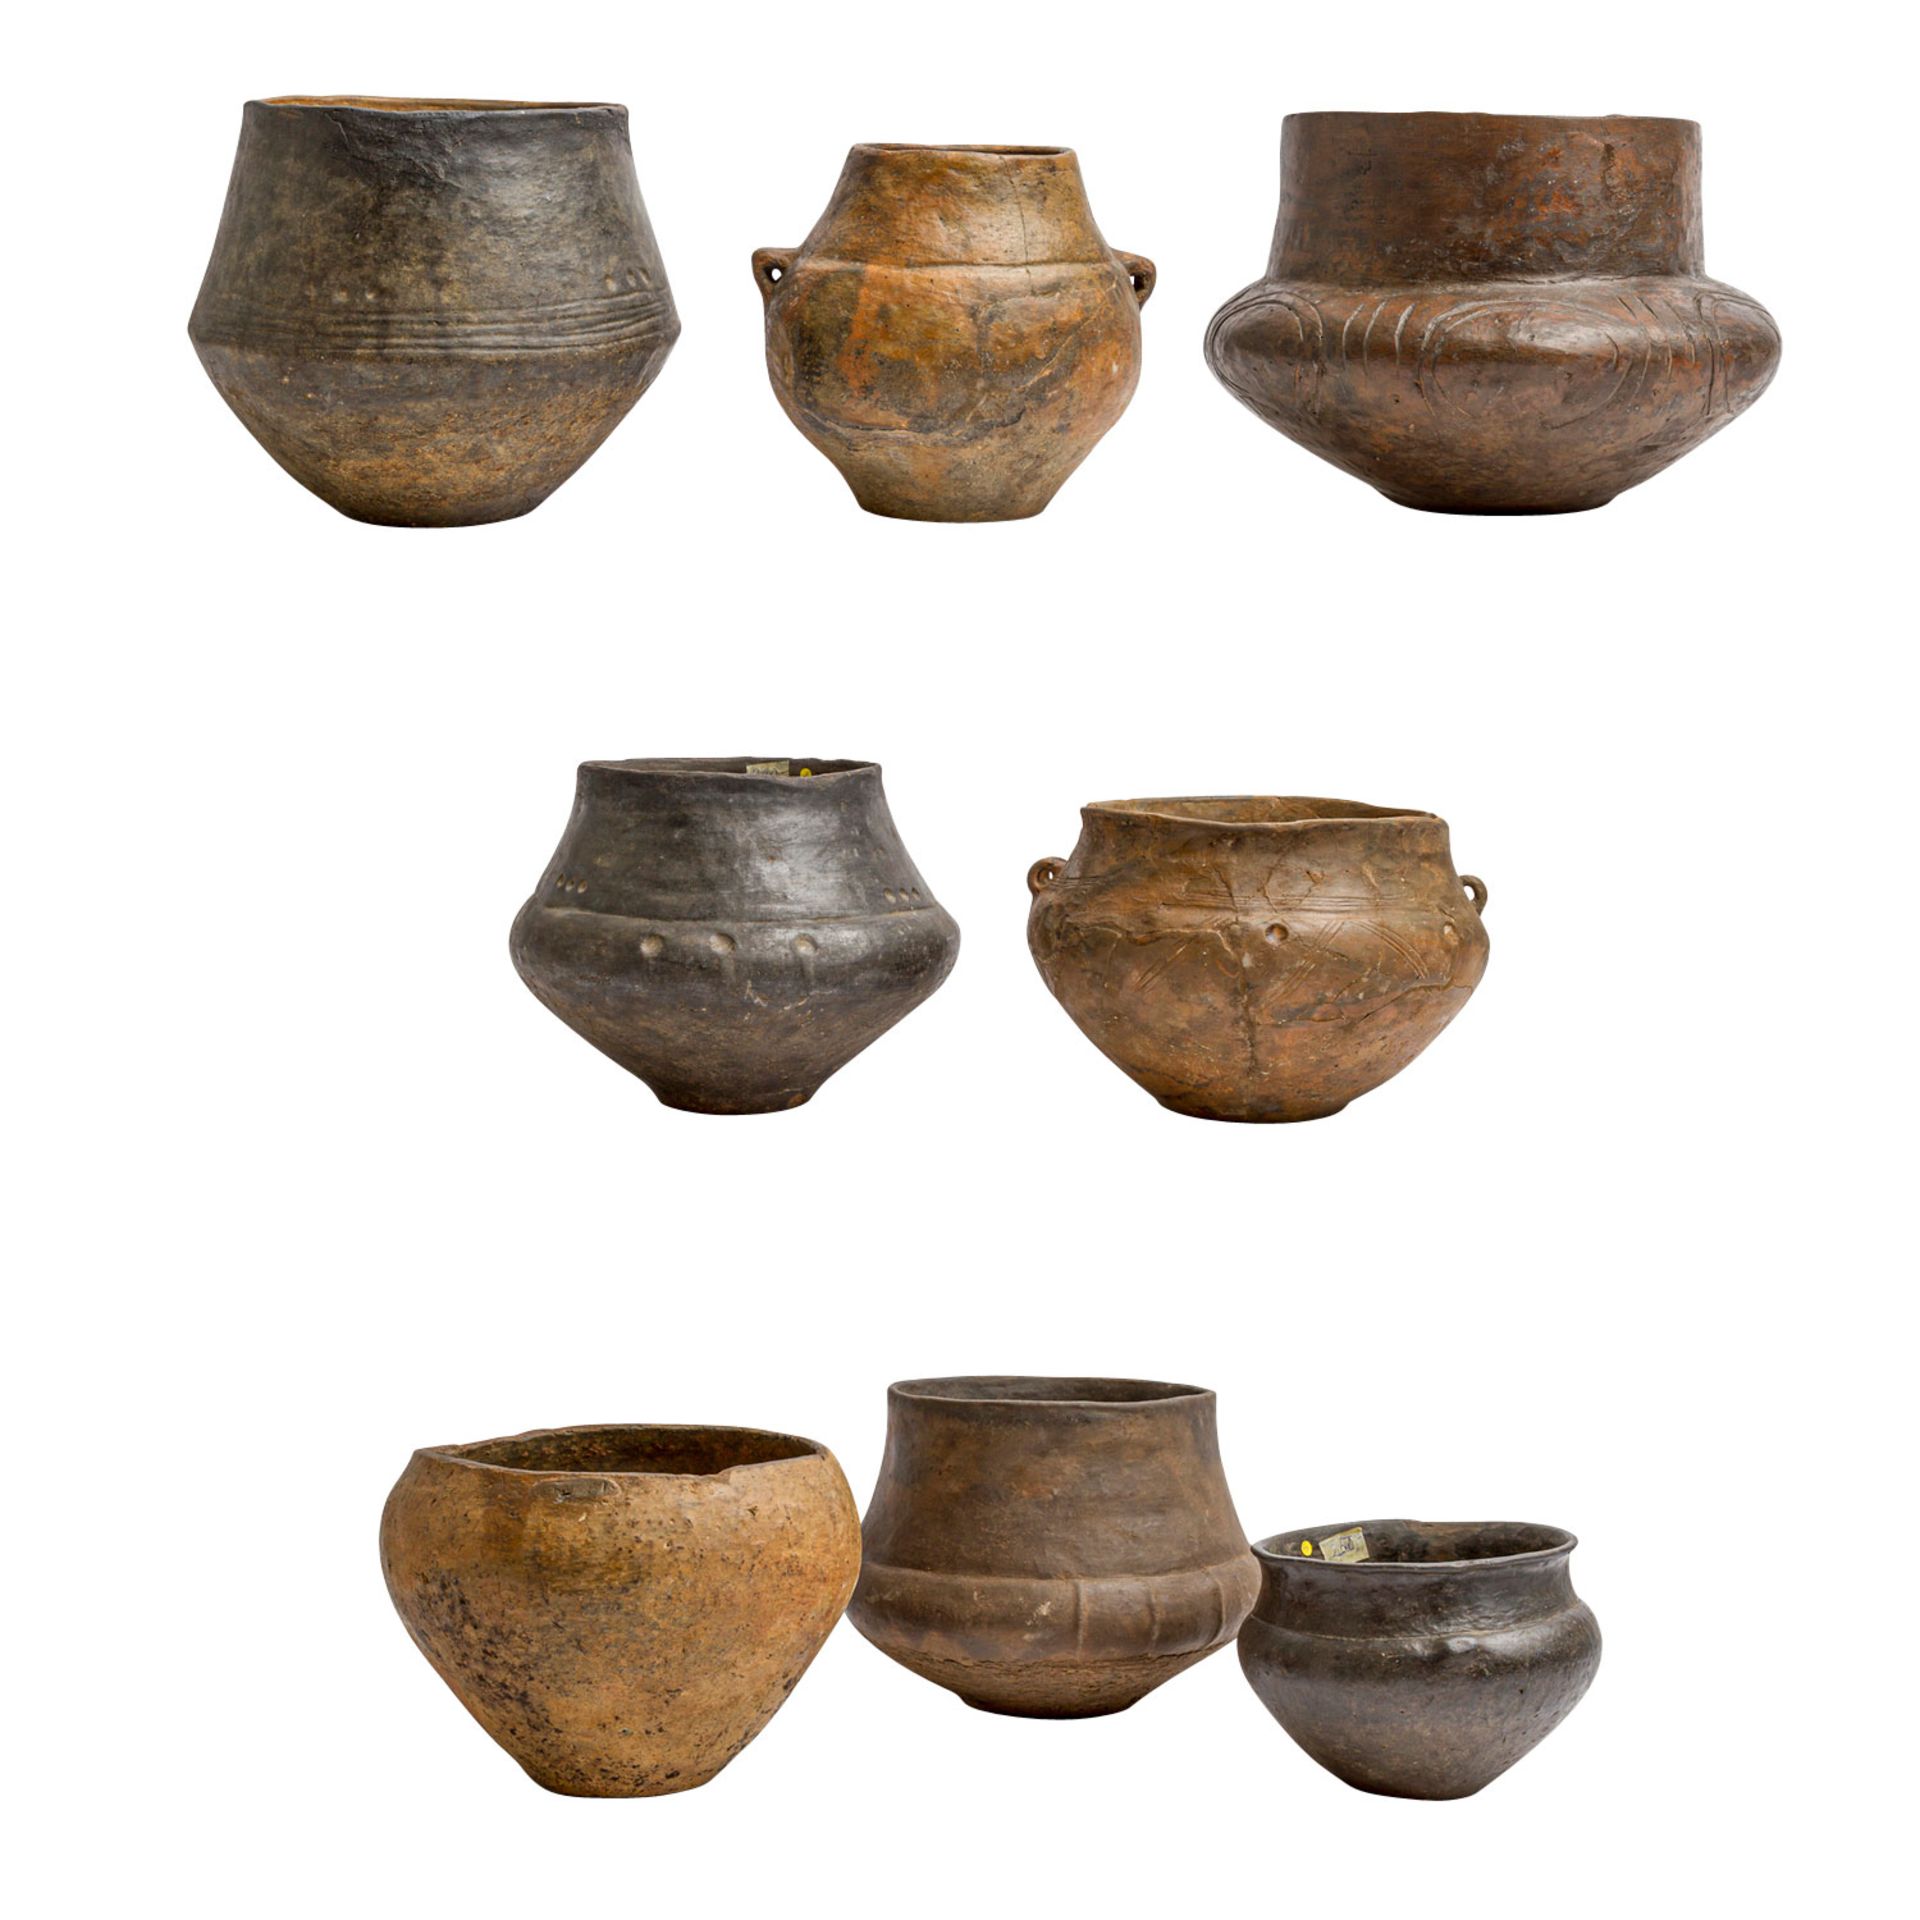 Prähistorische Keramik aus der Bronzezeit/Eisenzeit -<